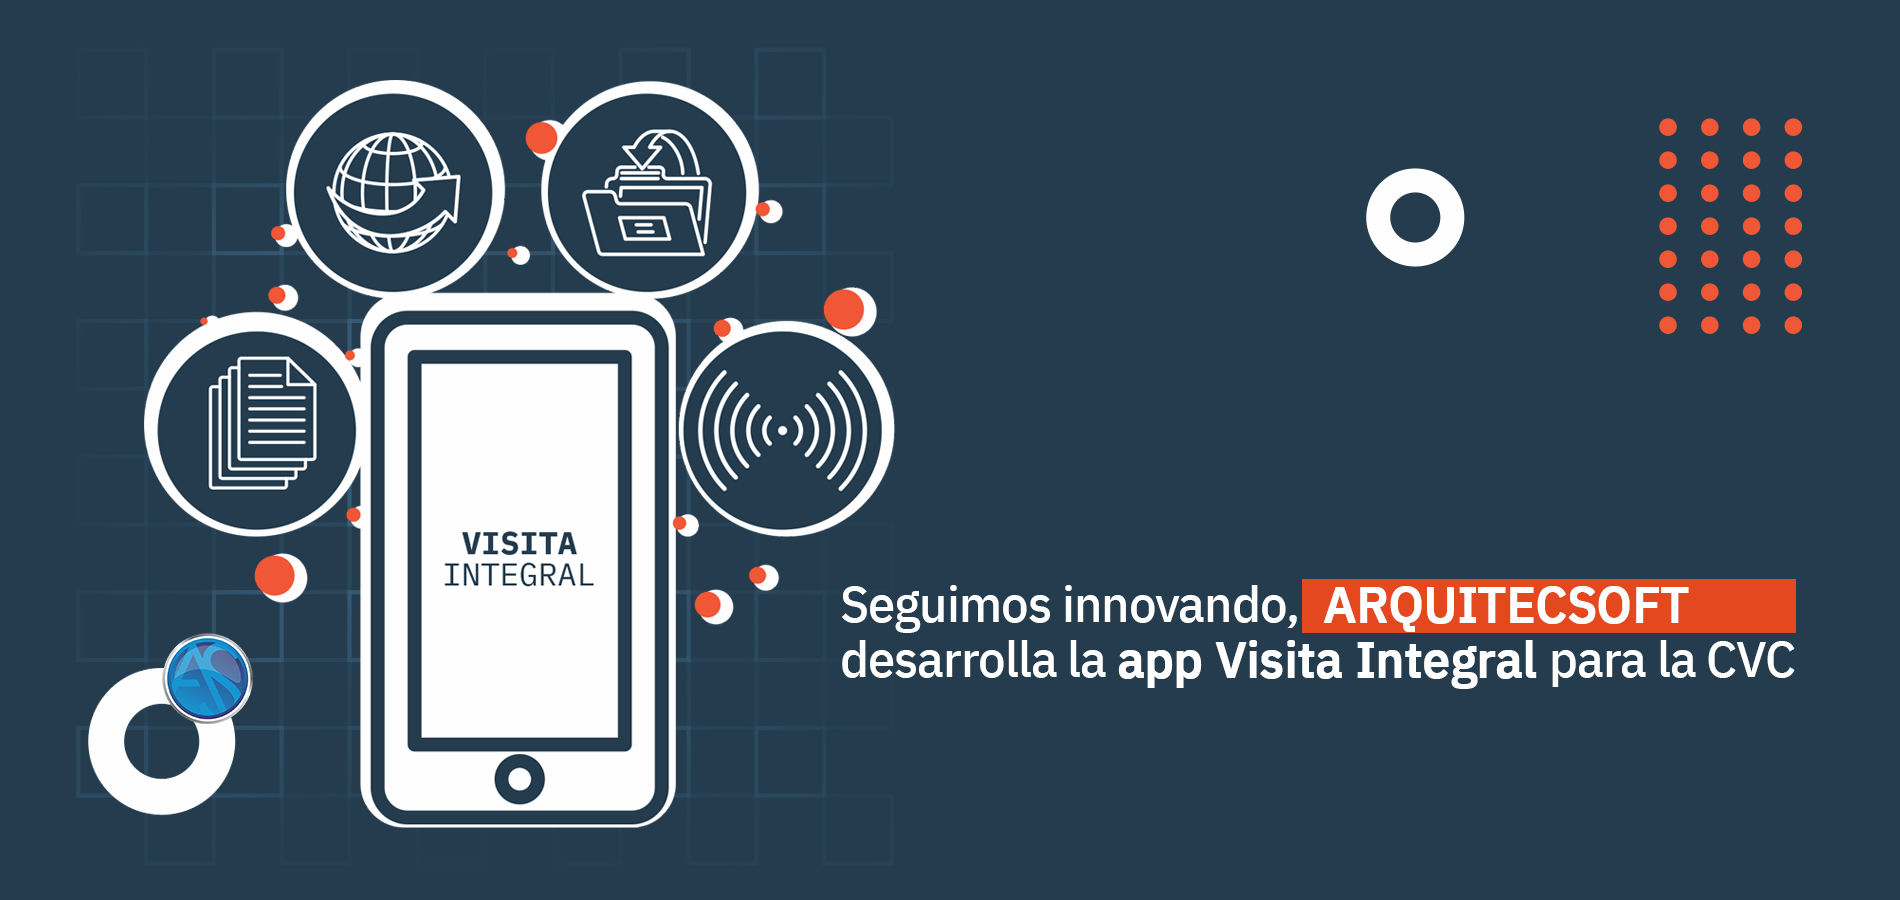 ARQUITECSOFT desarrolla la app de Visita Integral para la CVC